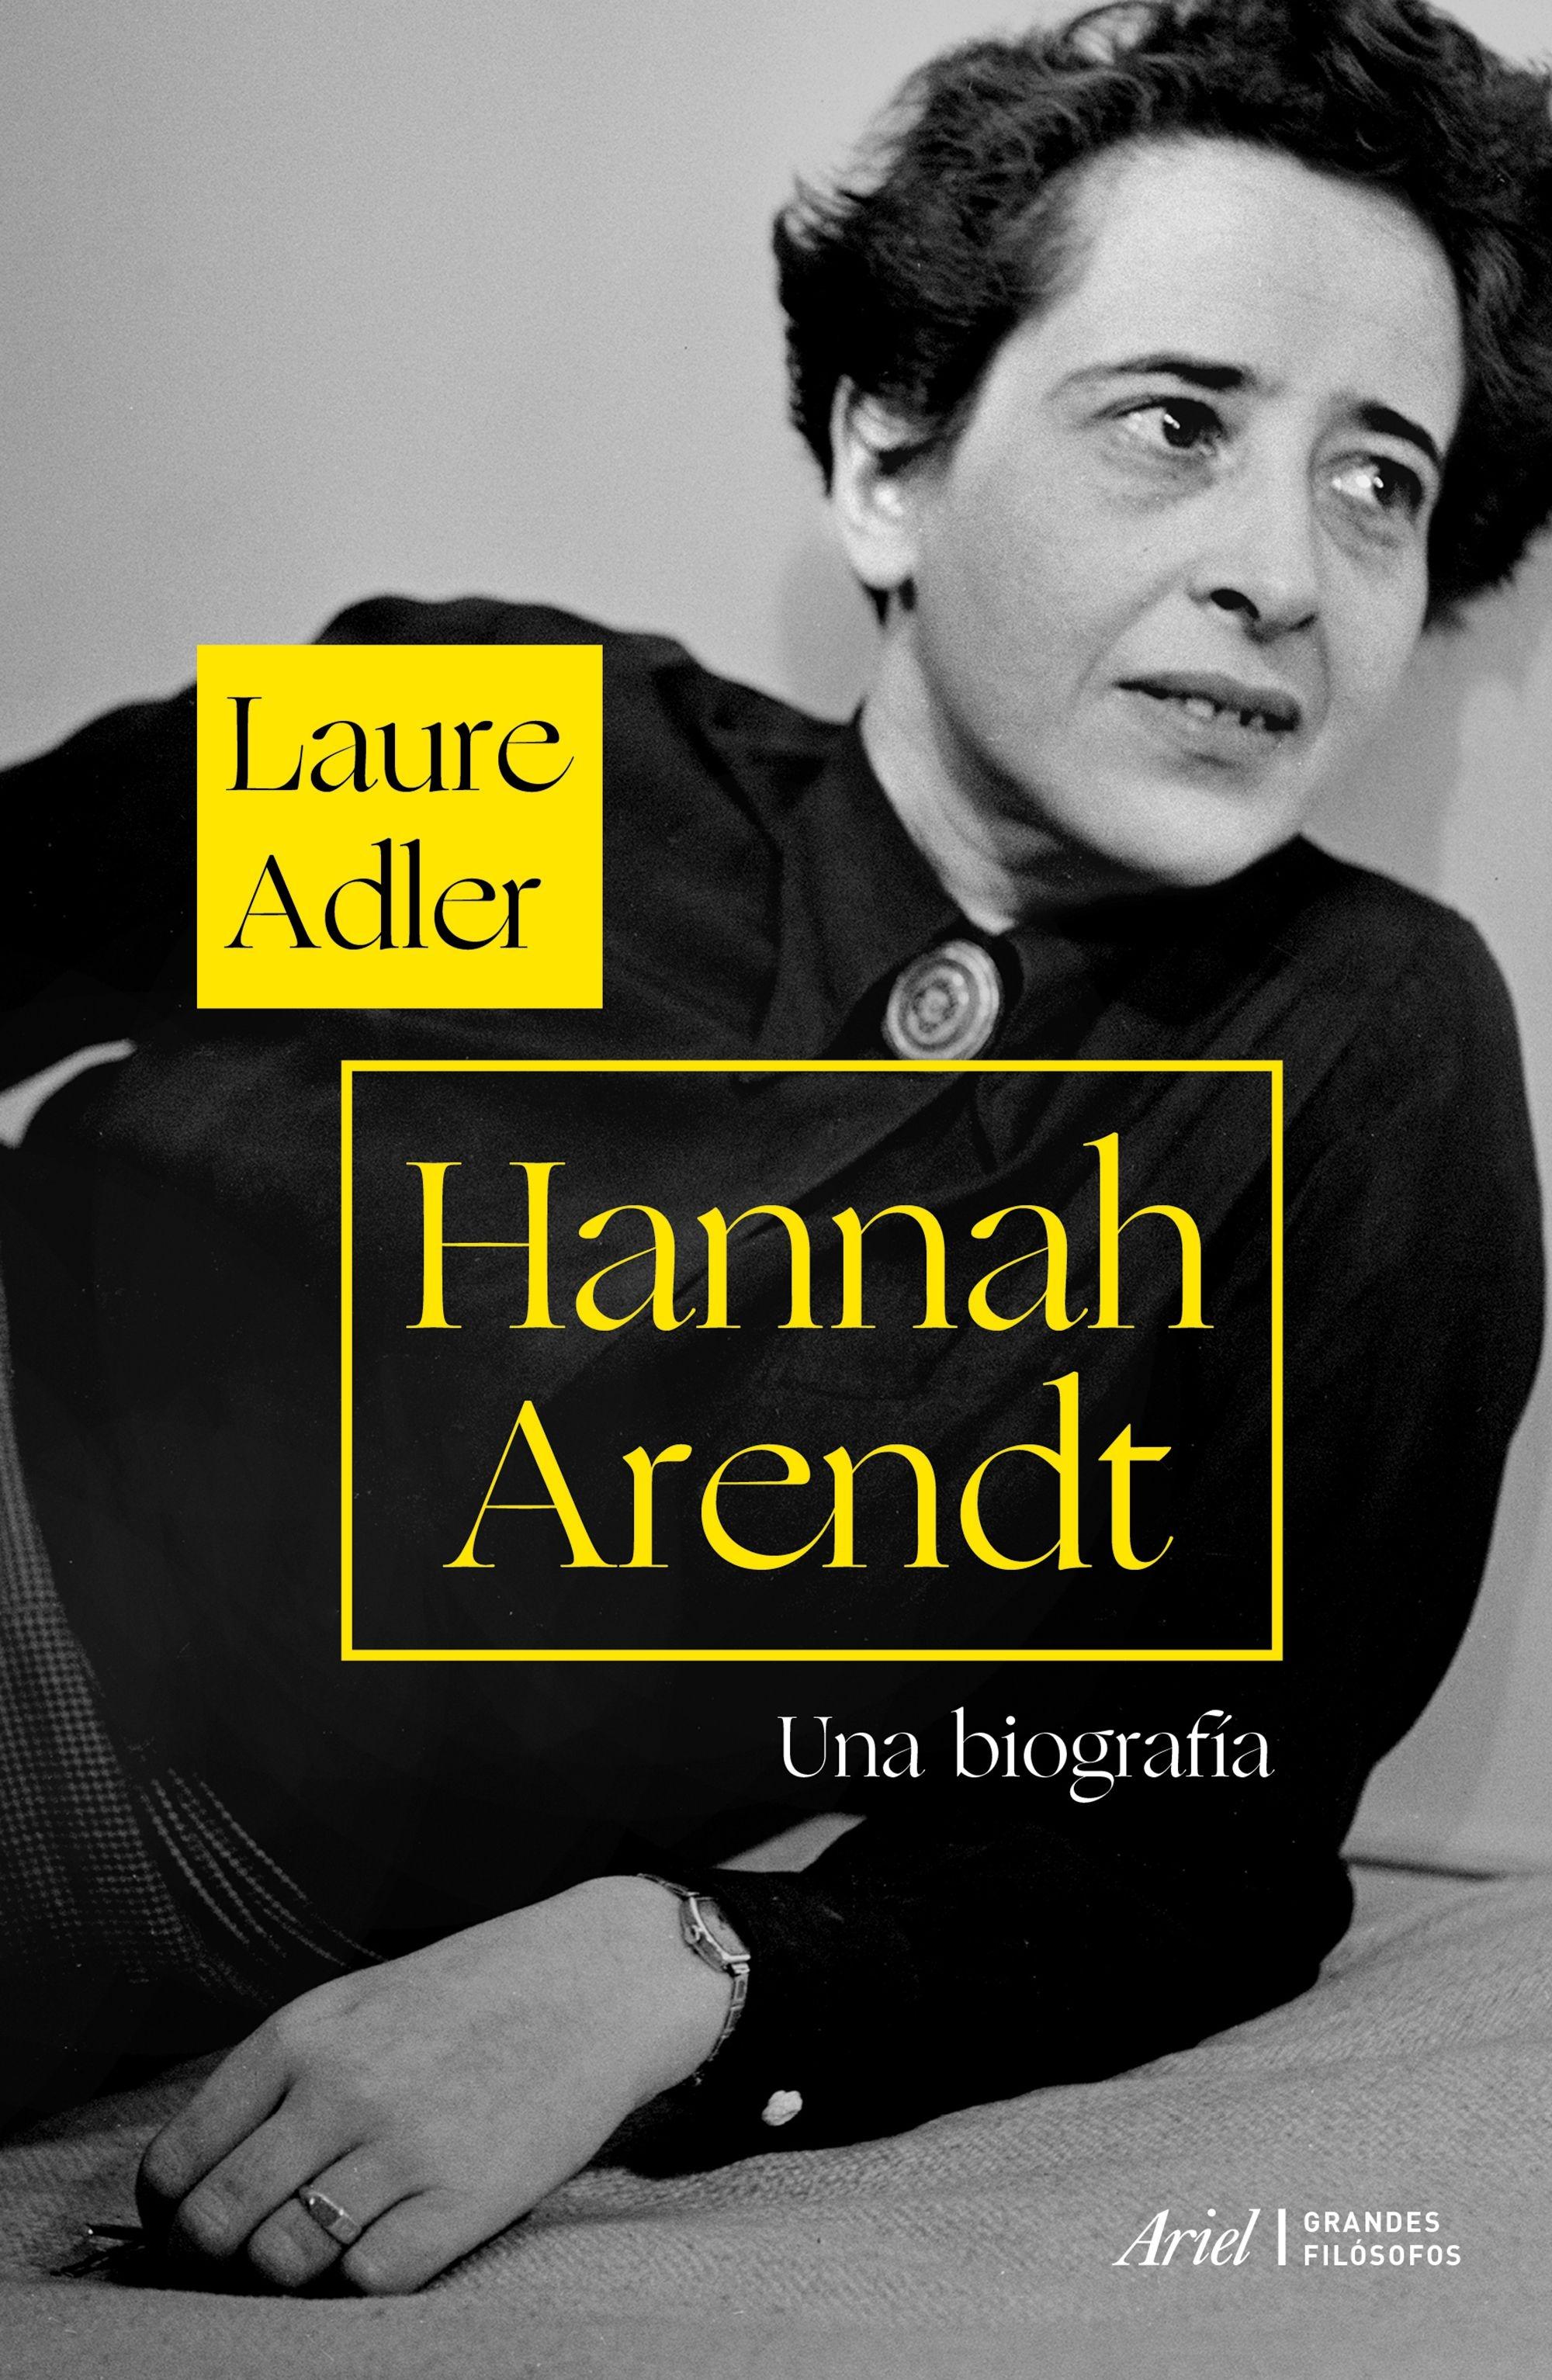 Hannah Arendt "Una Biografía"